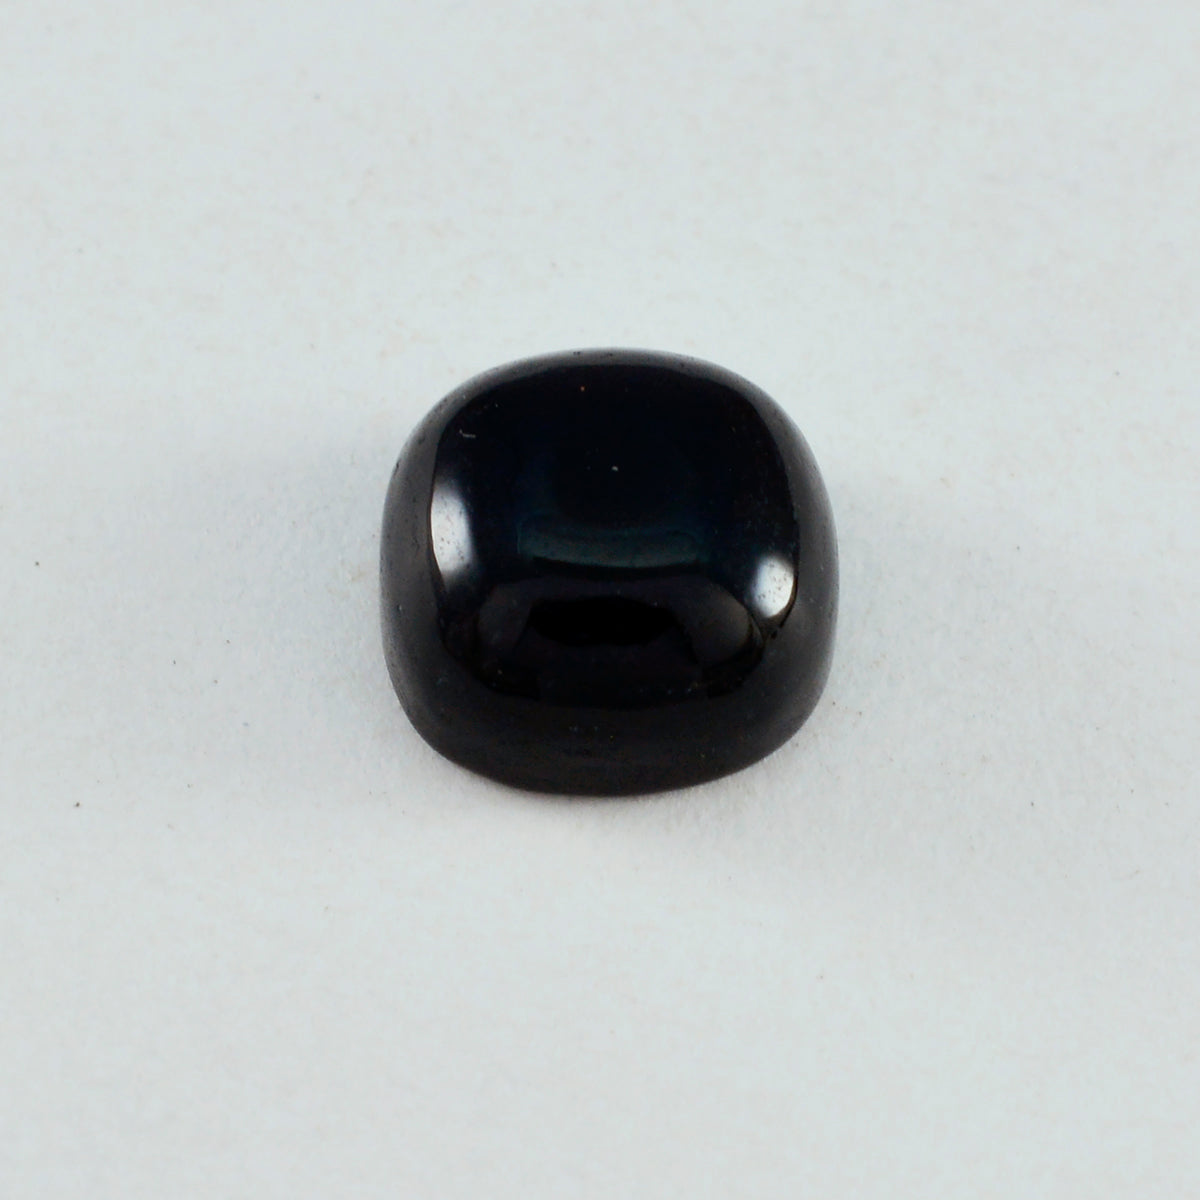 Riyogems 1 Stück schwarzer Onyx-Cabochon, 10 x 10 mm, Kissenform, hübscher Qualitätsstein